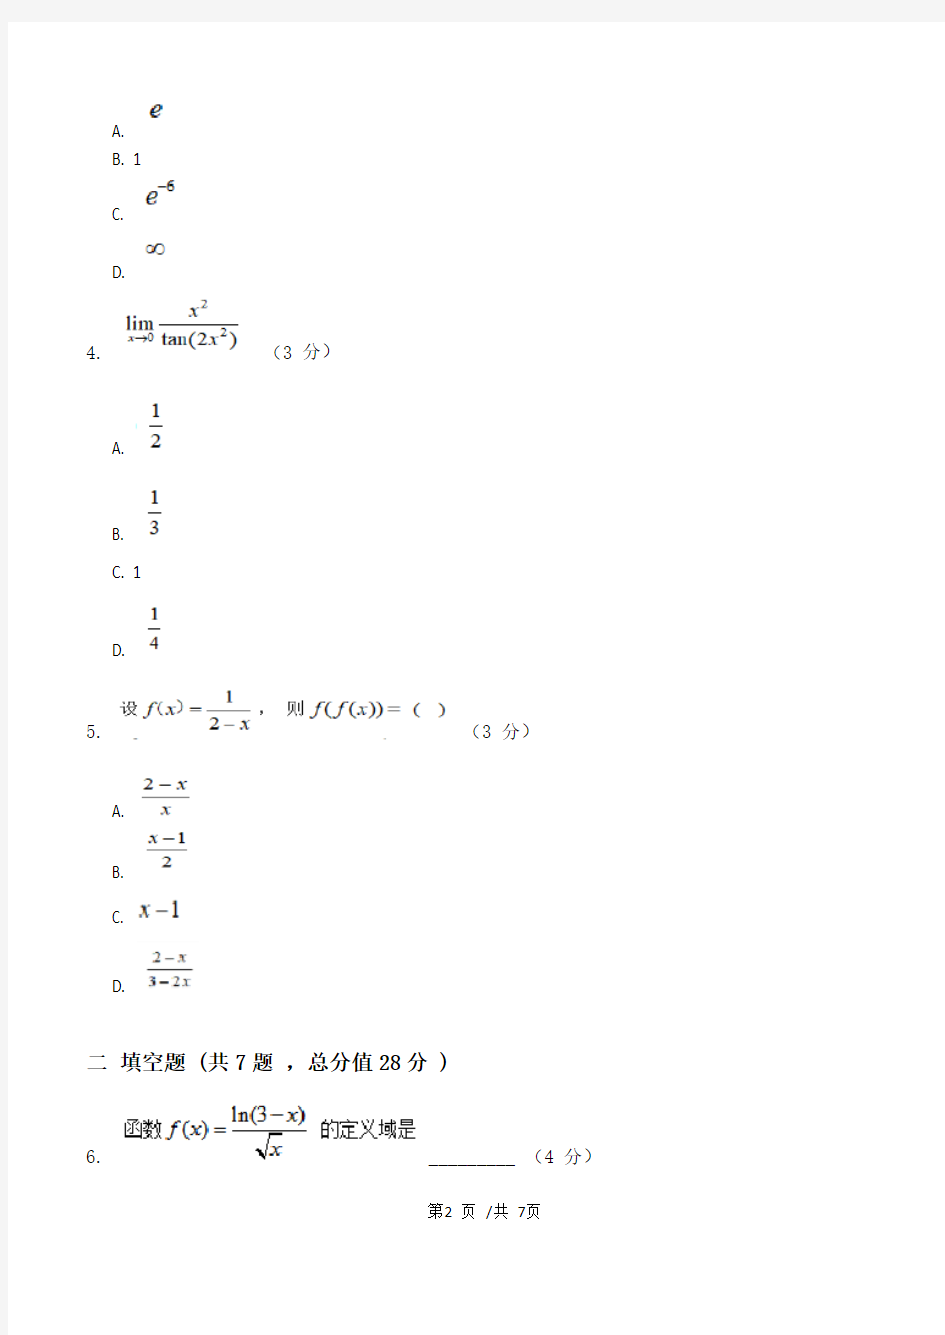 高等数学Ⅱ(专科类)第1阶段江南大学练习题答案  共三个阶段,这是其中一个阶段,答案在最后。